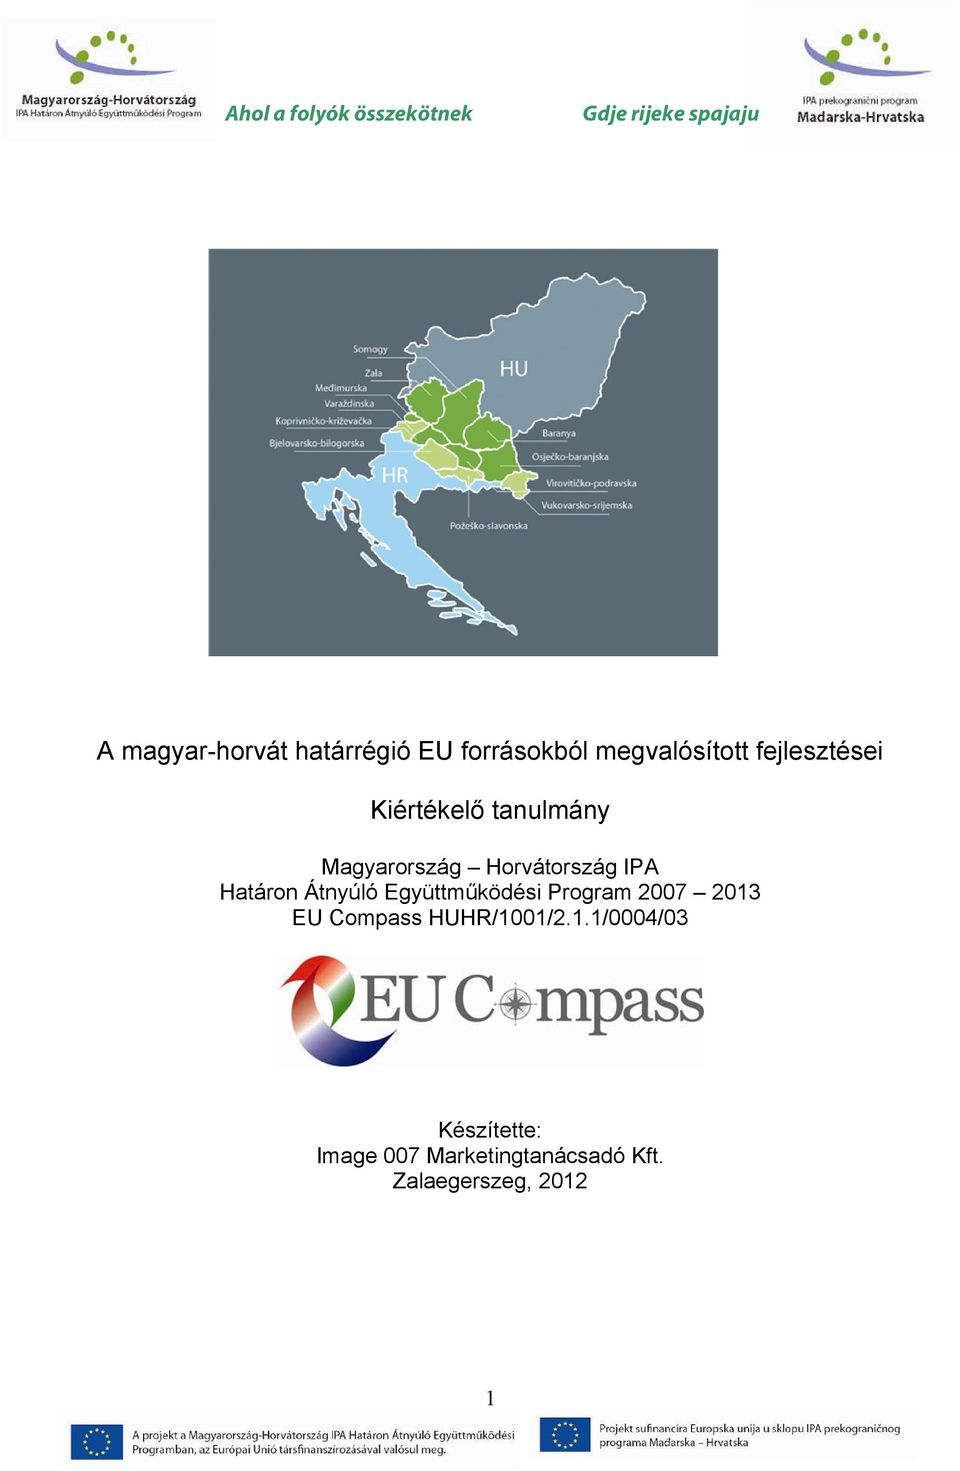 Határon Átnyúló Együttműködési Program 2007 2013 EU Compass